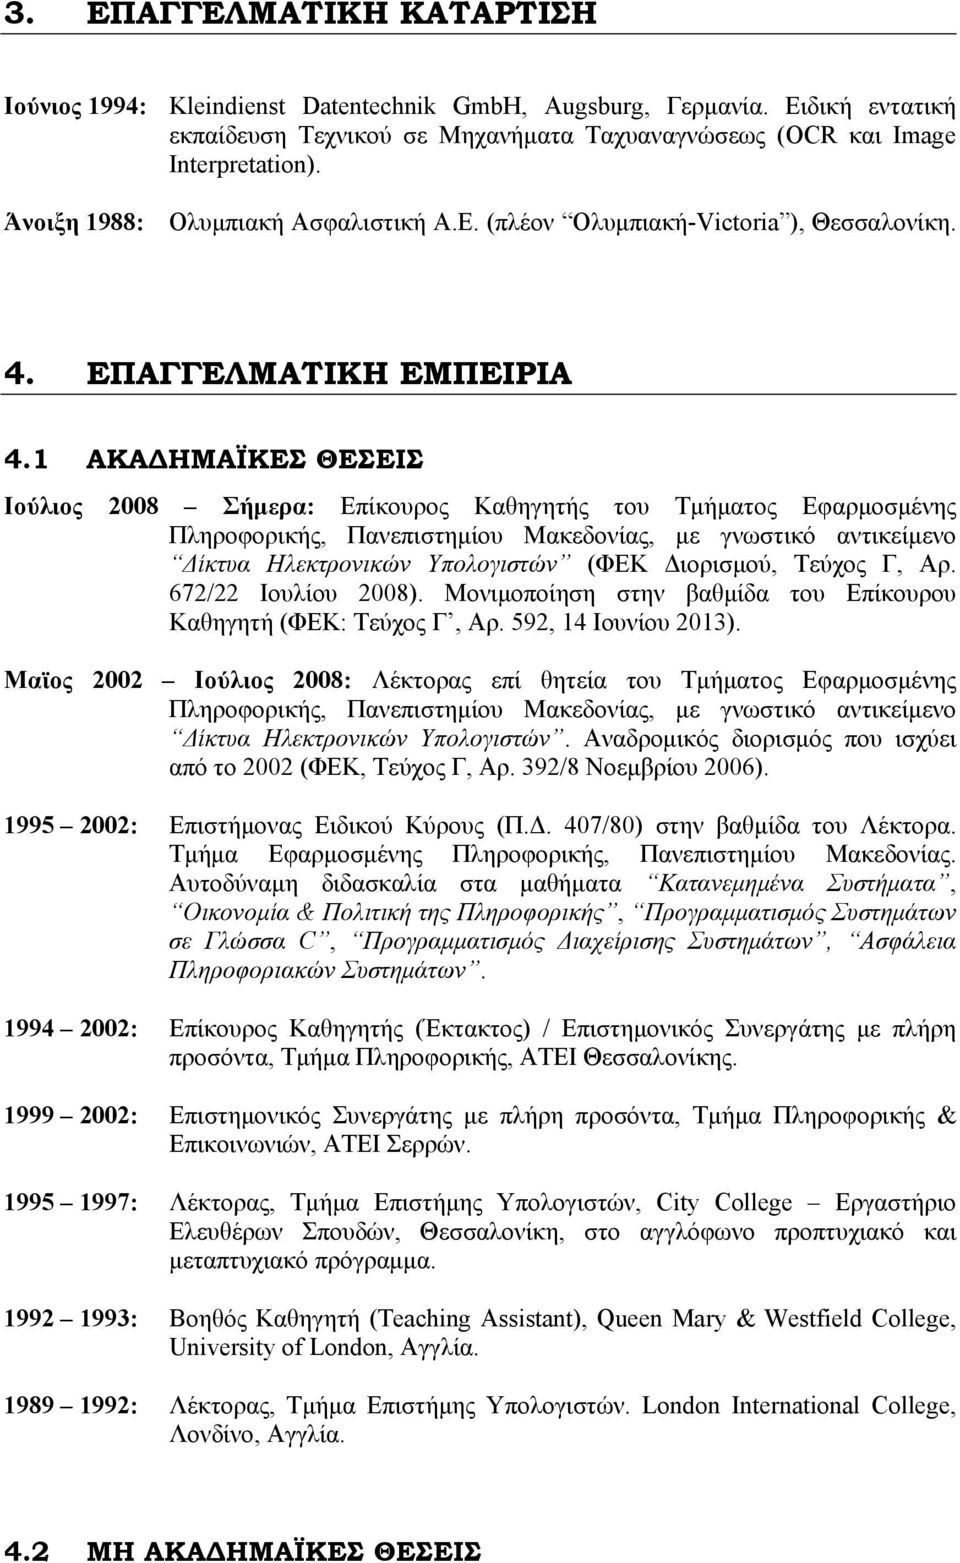 1 ΑΚΑΔΗΜΑΪΚΕΣ ΘΕΣΕΙΣ Ιούλιος 2008 Σήμερα: Επίκουρος Καθηγητής του Τμήματος Εφαρμοσμένης Πληροφορικής, Πανεπιστημίου Μακεδονίας, με γνωστικό αντικείμενο Δίκτυα Ηλεκτρονικών Υπολογιστών (ΦΕΚ Διορισμού,